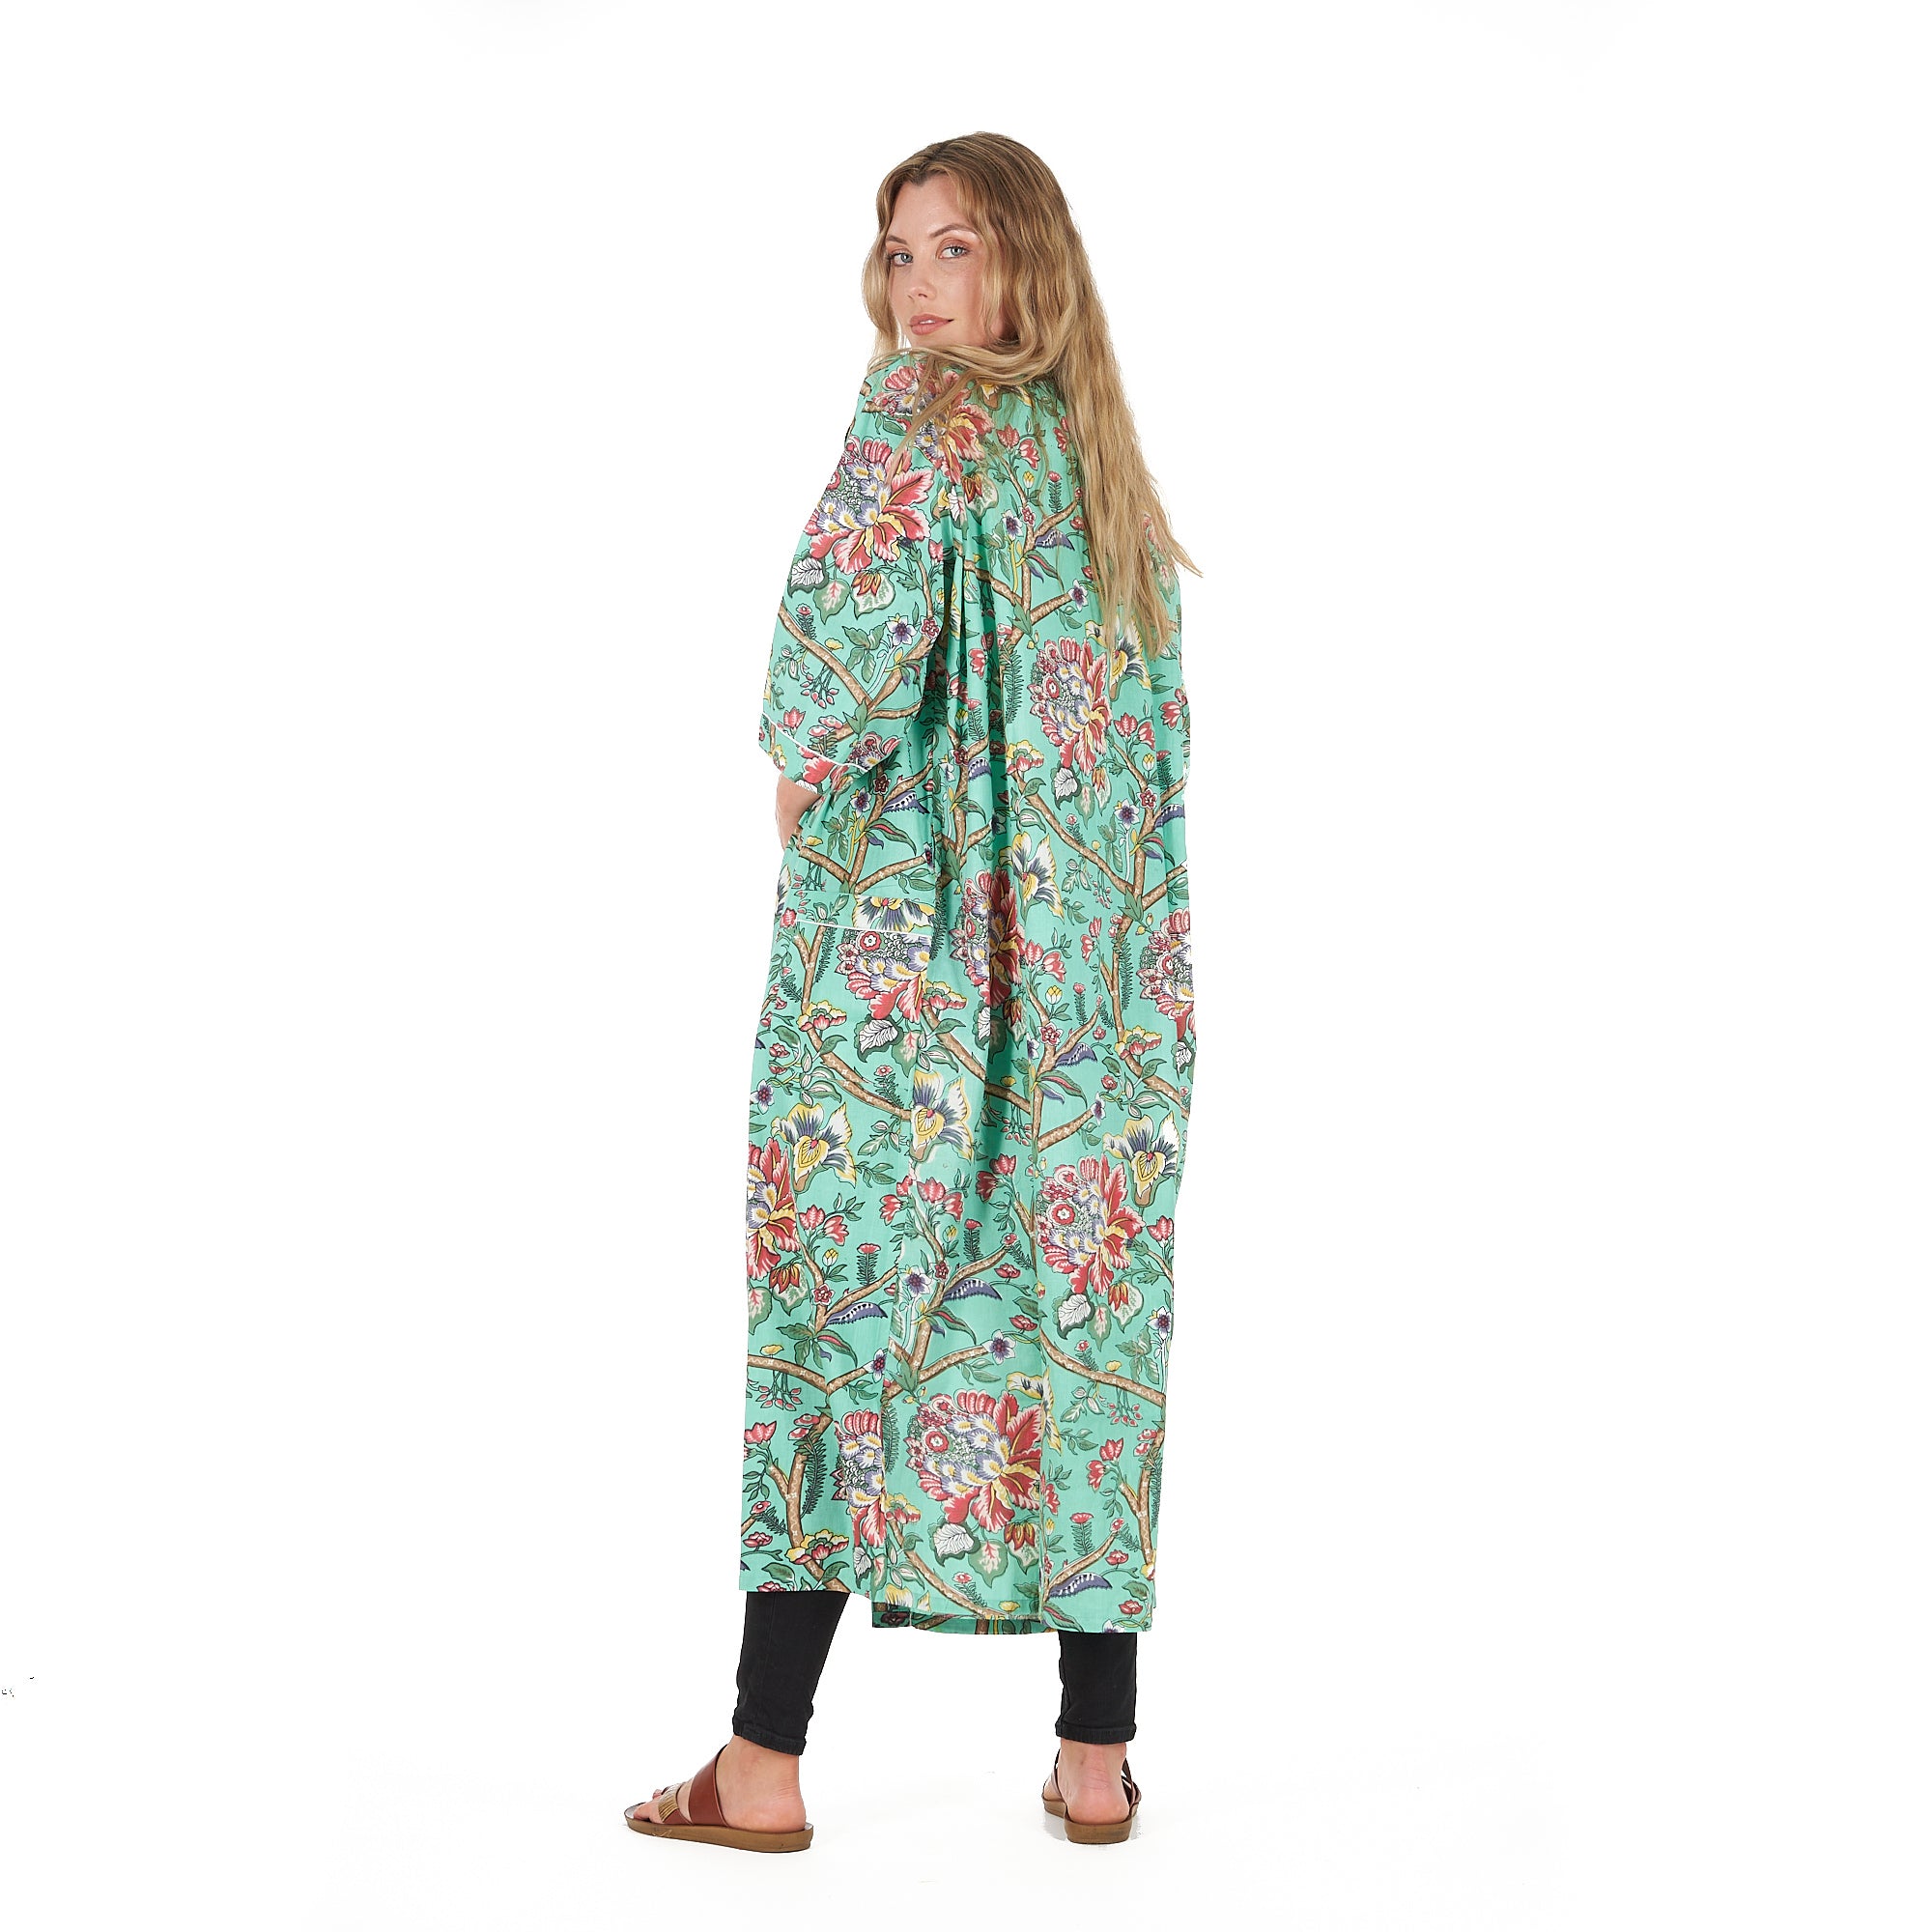 'Calm & Collected' 100% Cotton Kimono Robe